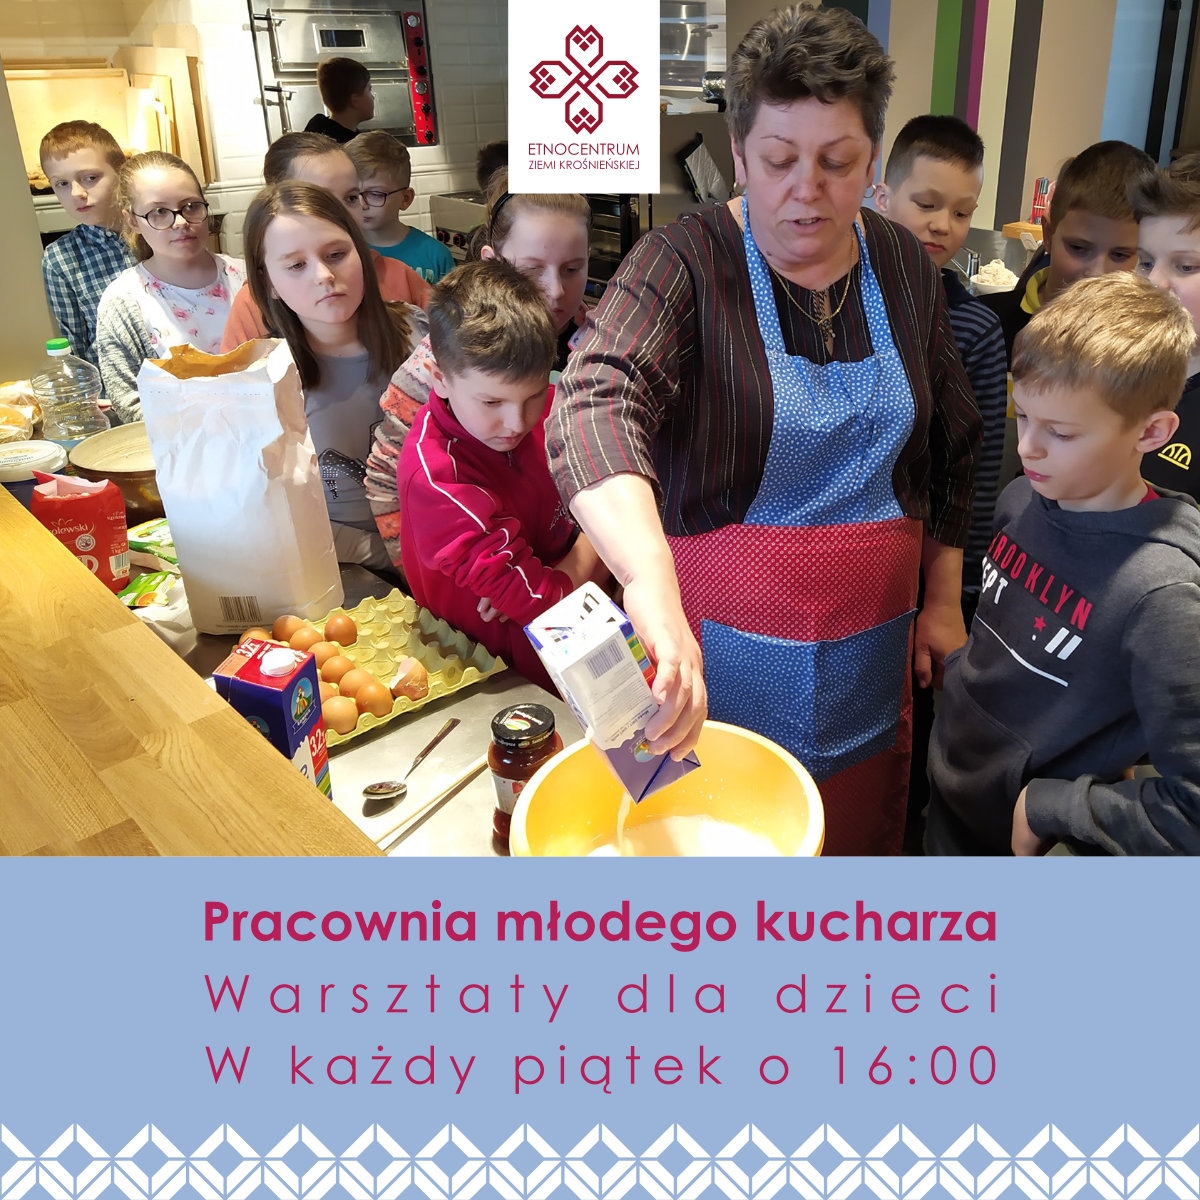 Kucharka w fartuchu wlewa mleko z kartonu do miski obok stoją gromadka dzieci - trwają warsztaty z gotowania